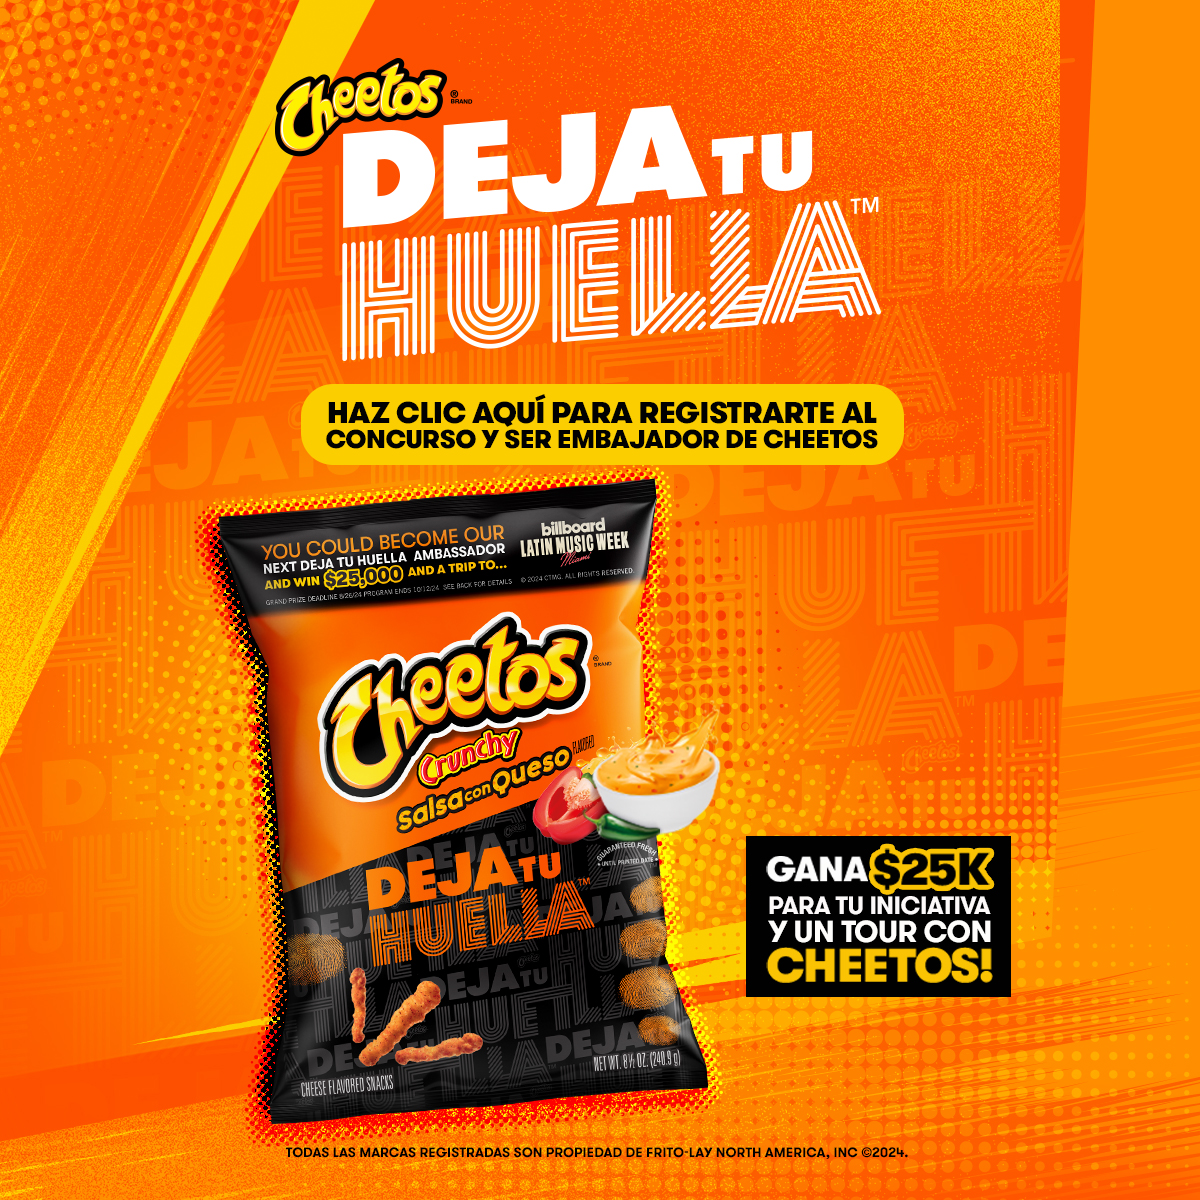 Participa y ten la oportunidad de ser el próximo embajador de Cheetos Deja Tu Huella y de ganar $25,000 para tu iniciativa.